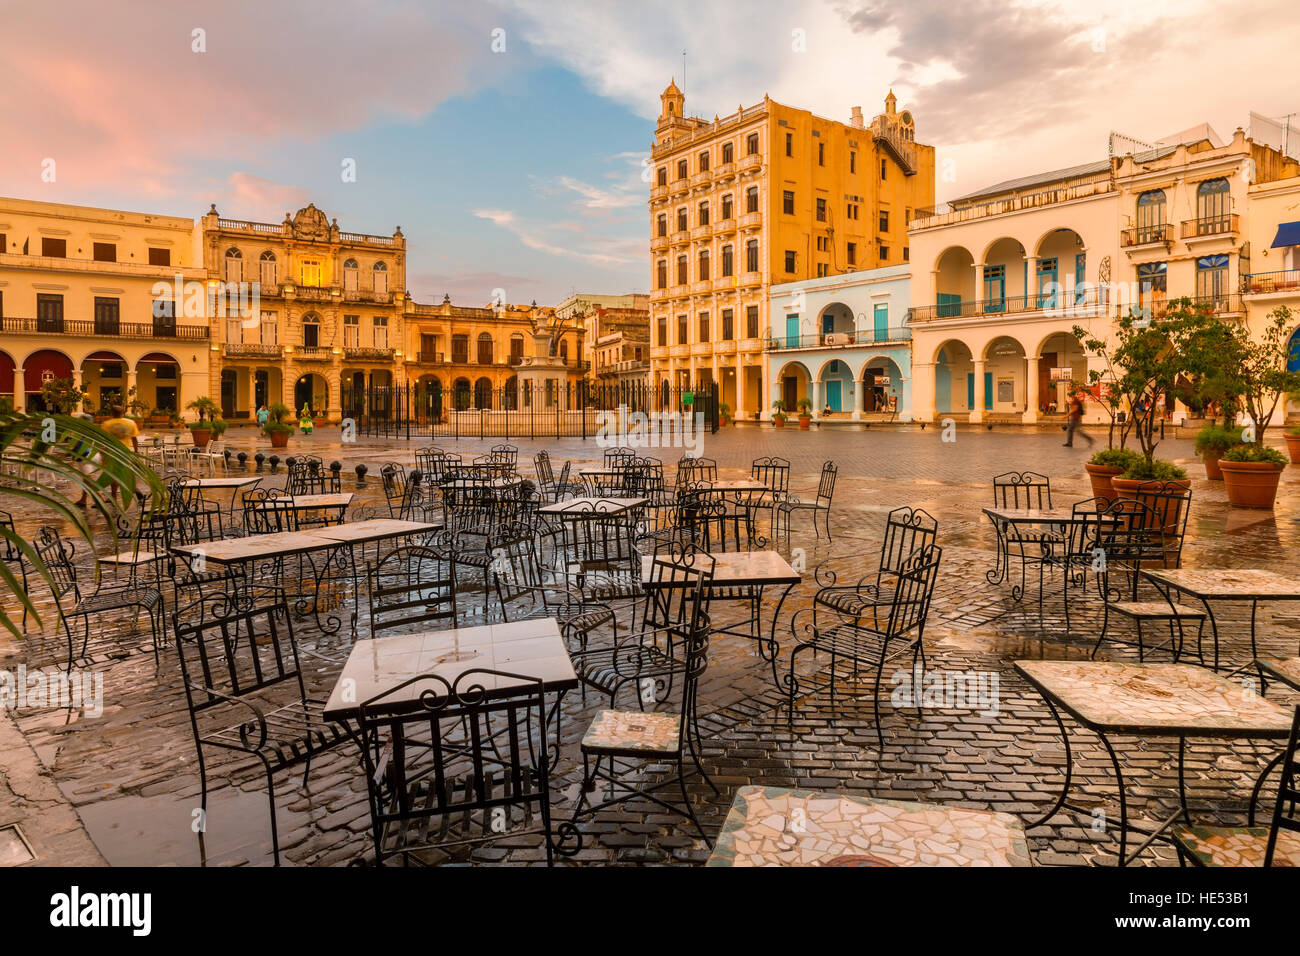 Plaza Vieja und eine Restaurant-Terrasse nach einem Regenschauer. Alt-Havanna, Kuba. Stockfoto